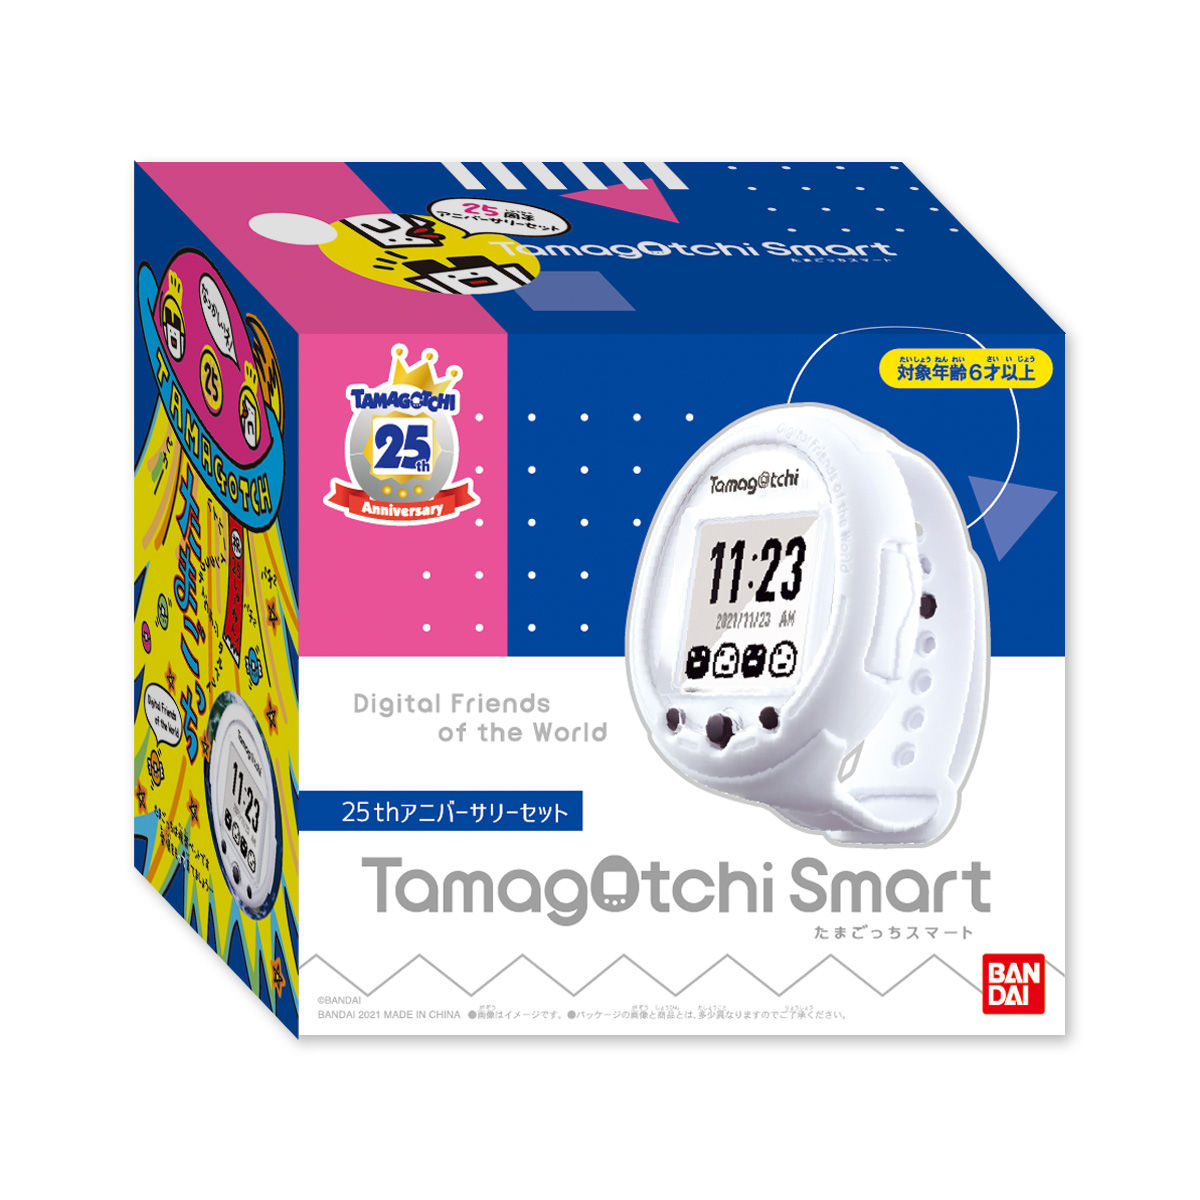 【抽選販売】Tamagotchi Smart 25th アニバーサリーセット